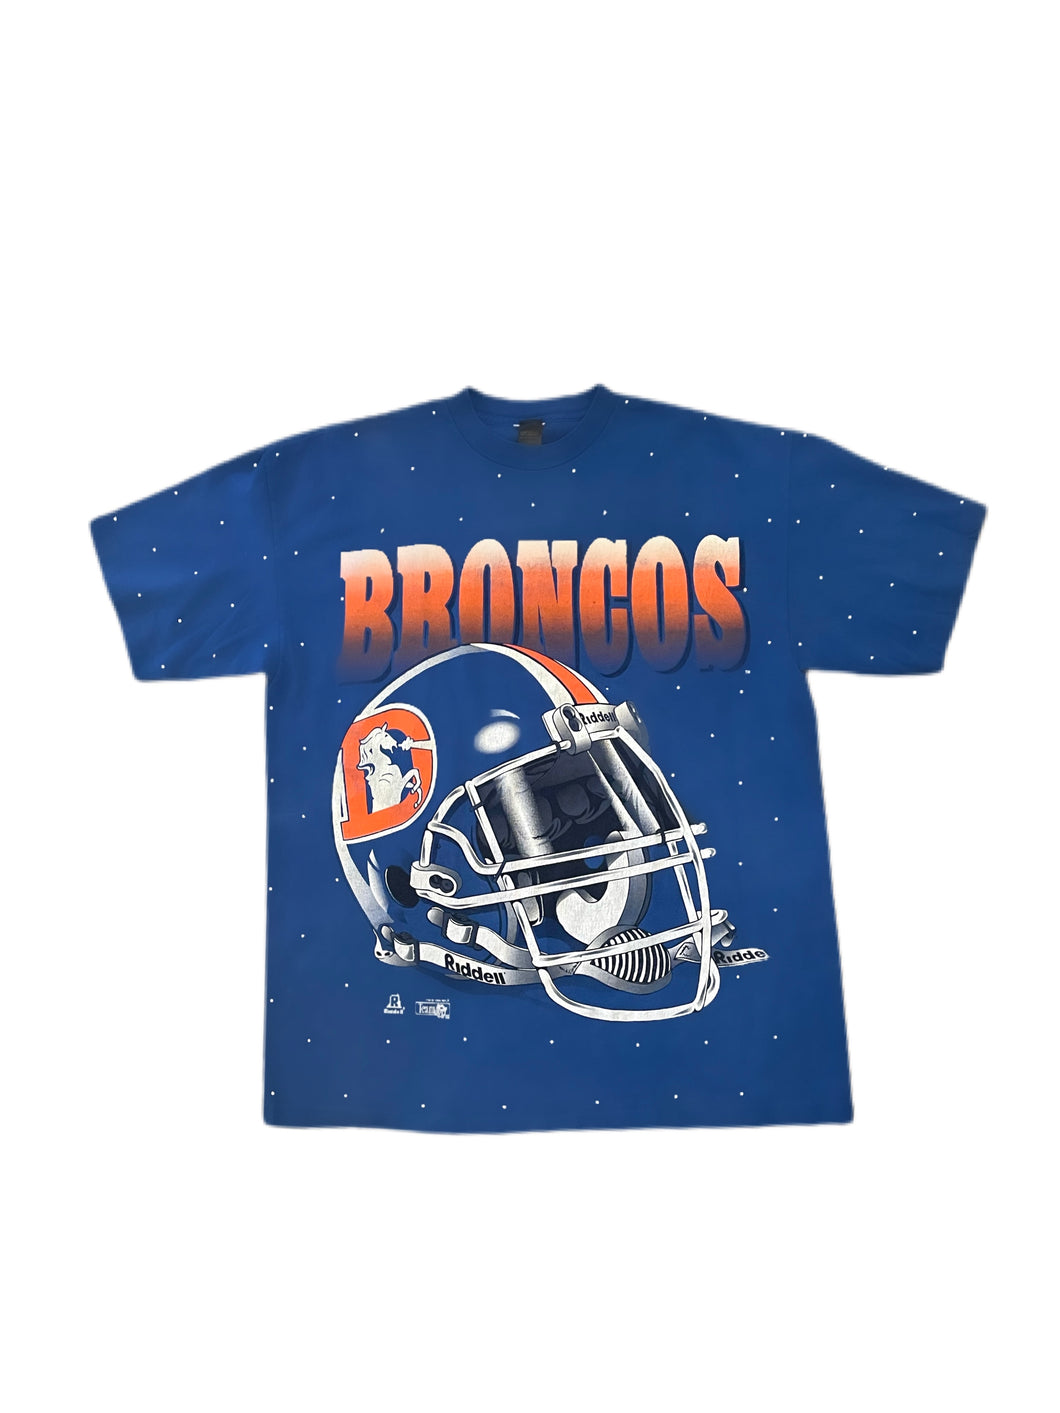 Denver Broncos, NFL One of a KIND Vintage Shirt with all over Crystal design